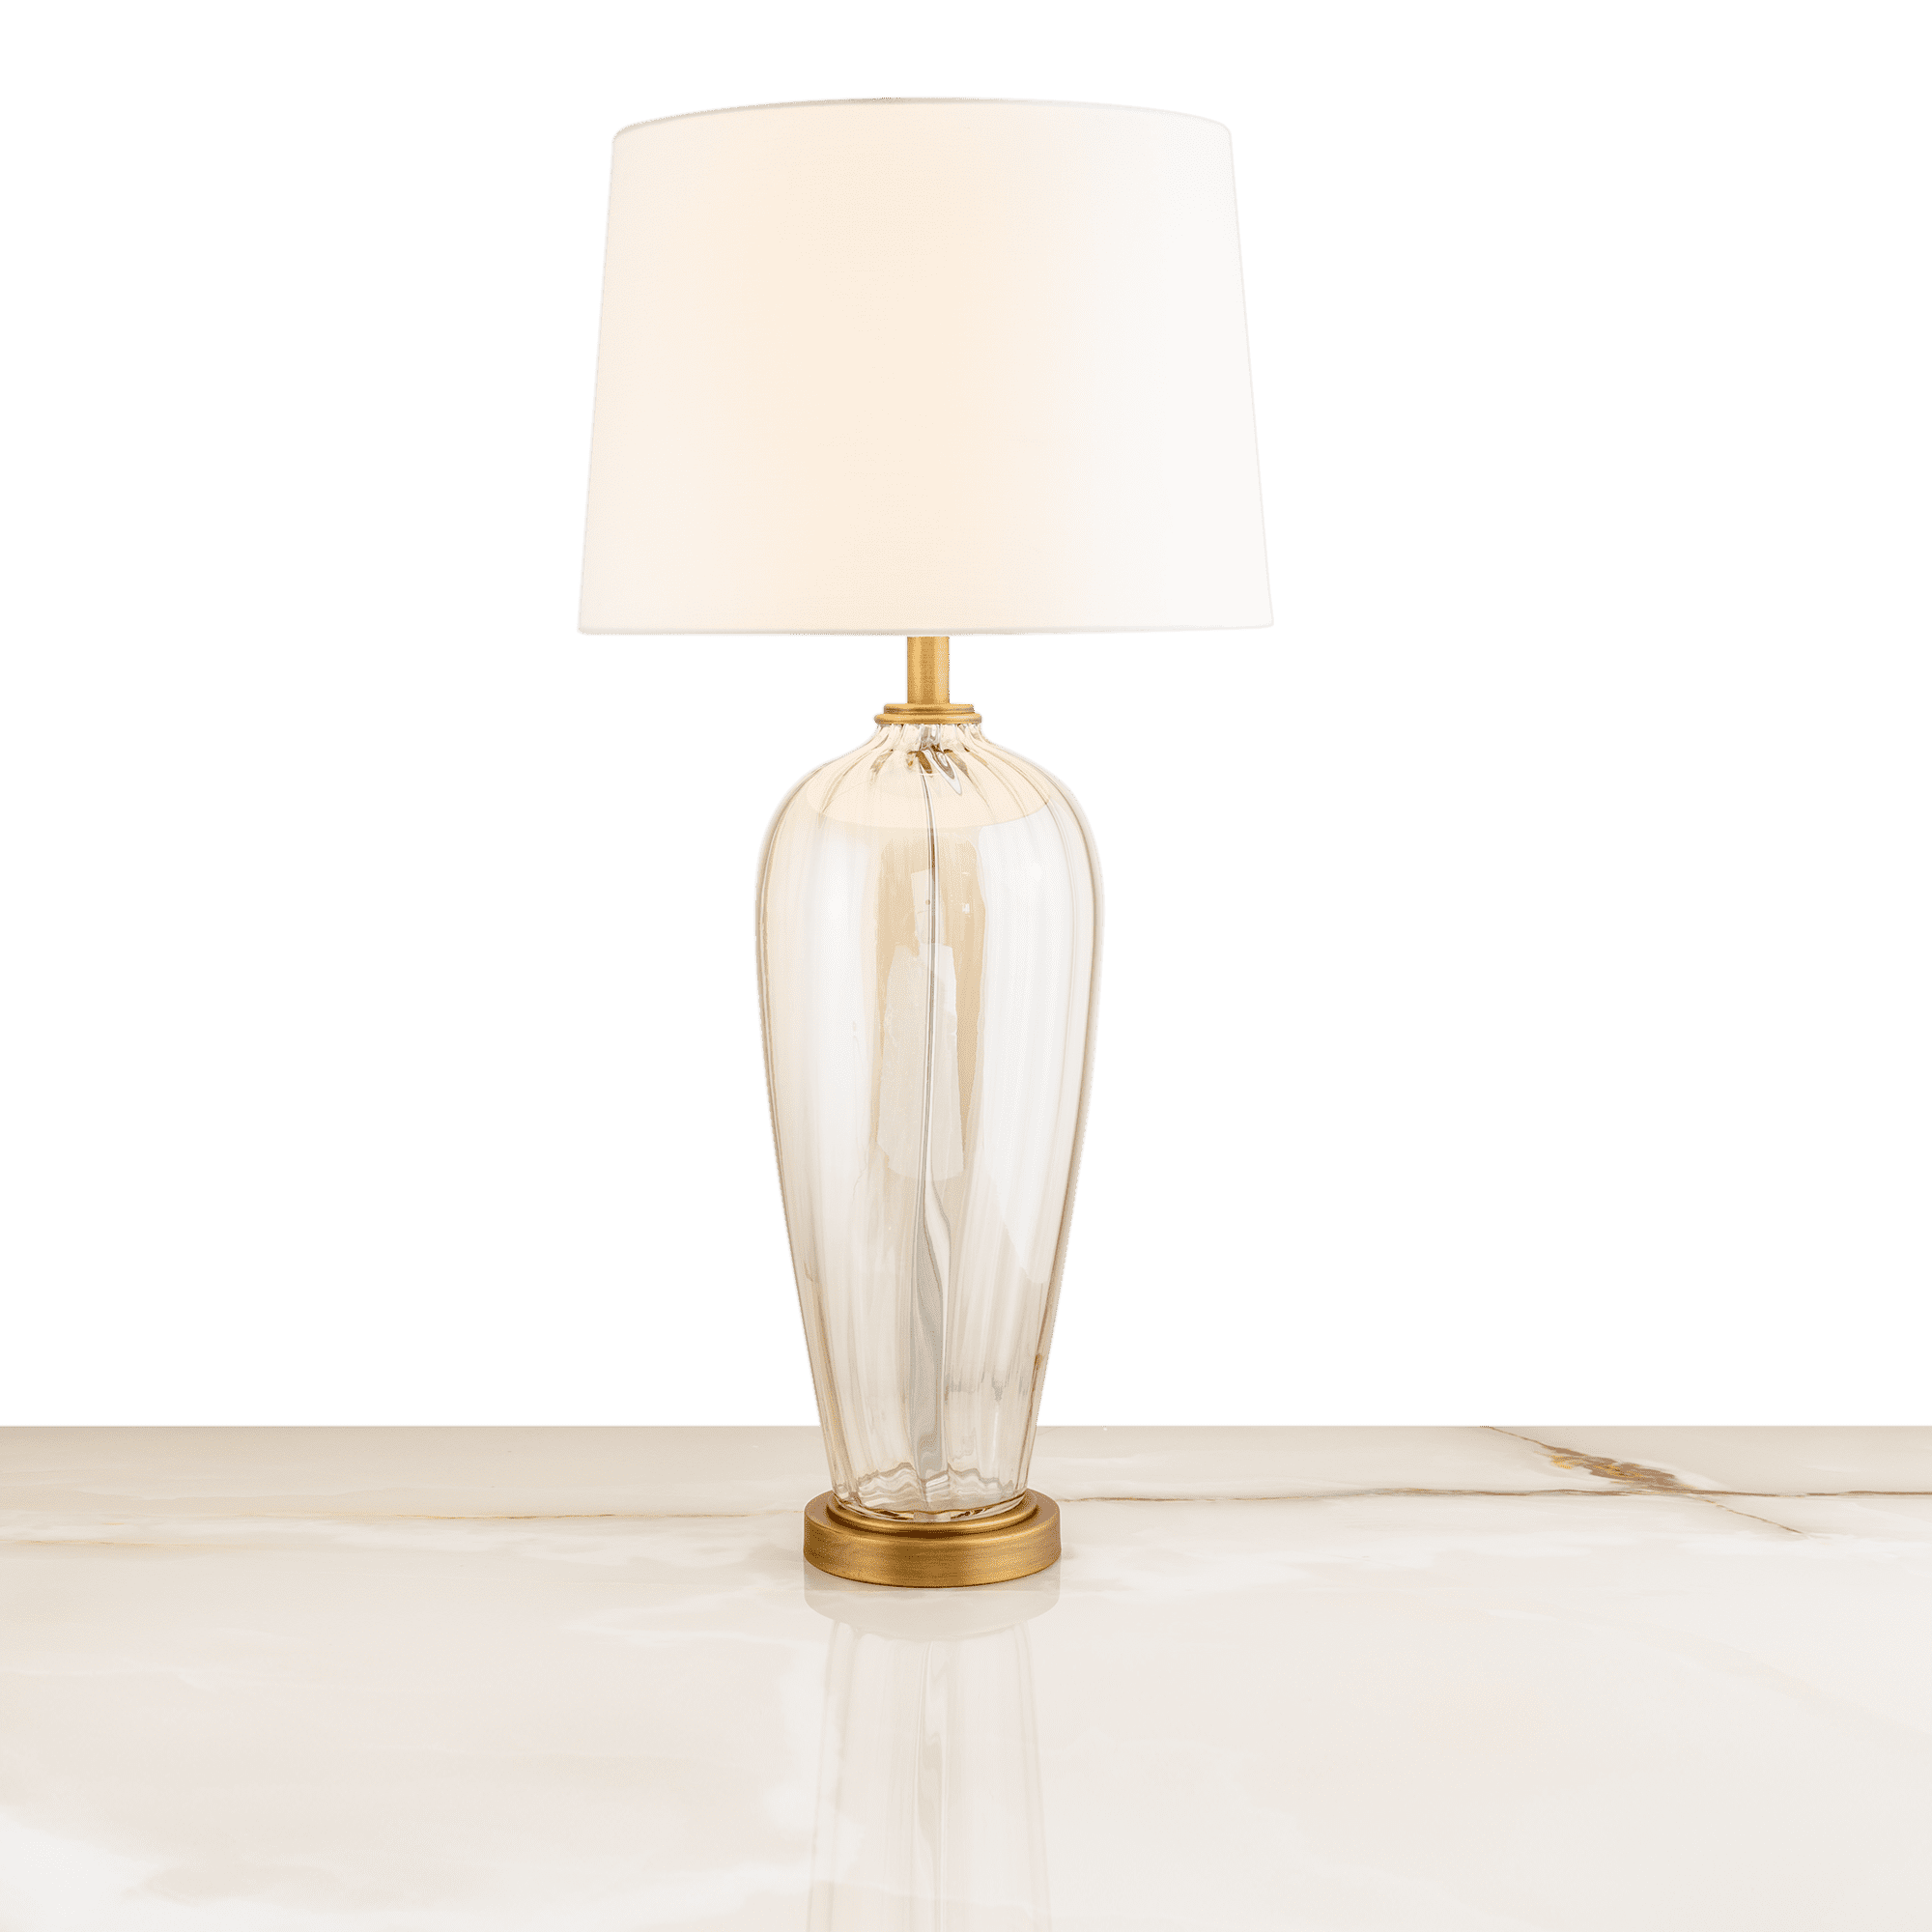 Arlington Table Lamp